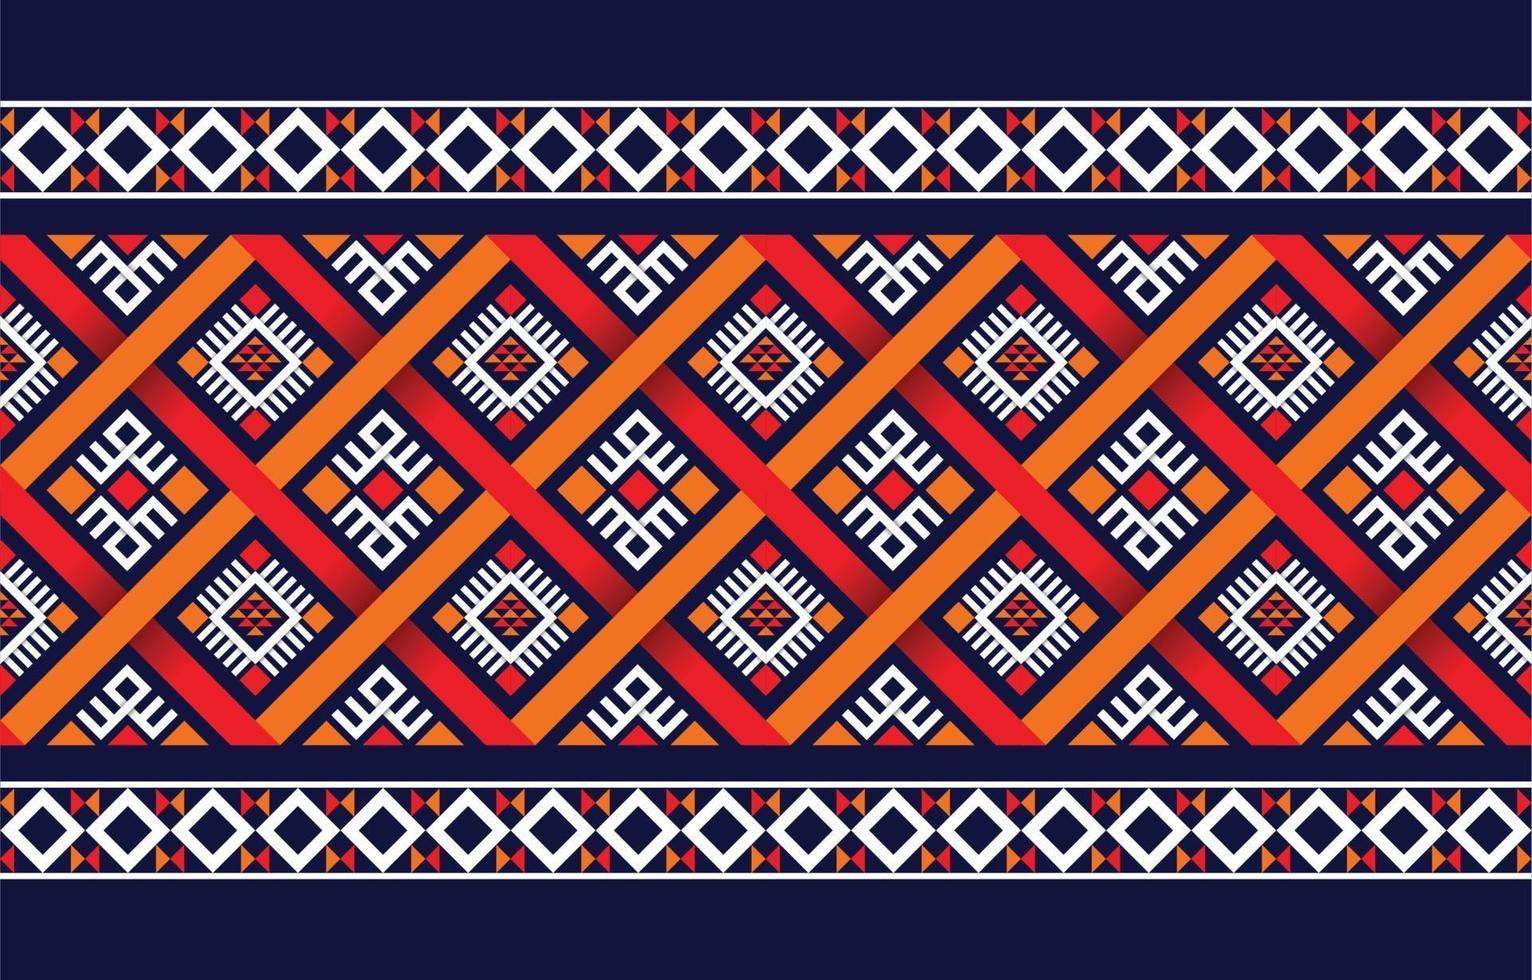 padrão étnico boho com geométrico em cores brilhantes. design para tapete, papel de parede, roupas, embrulho, batik, tecido, estilo de bordado de ilustração vetorial em temas étnicos. vetor